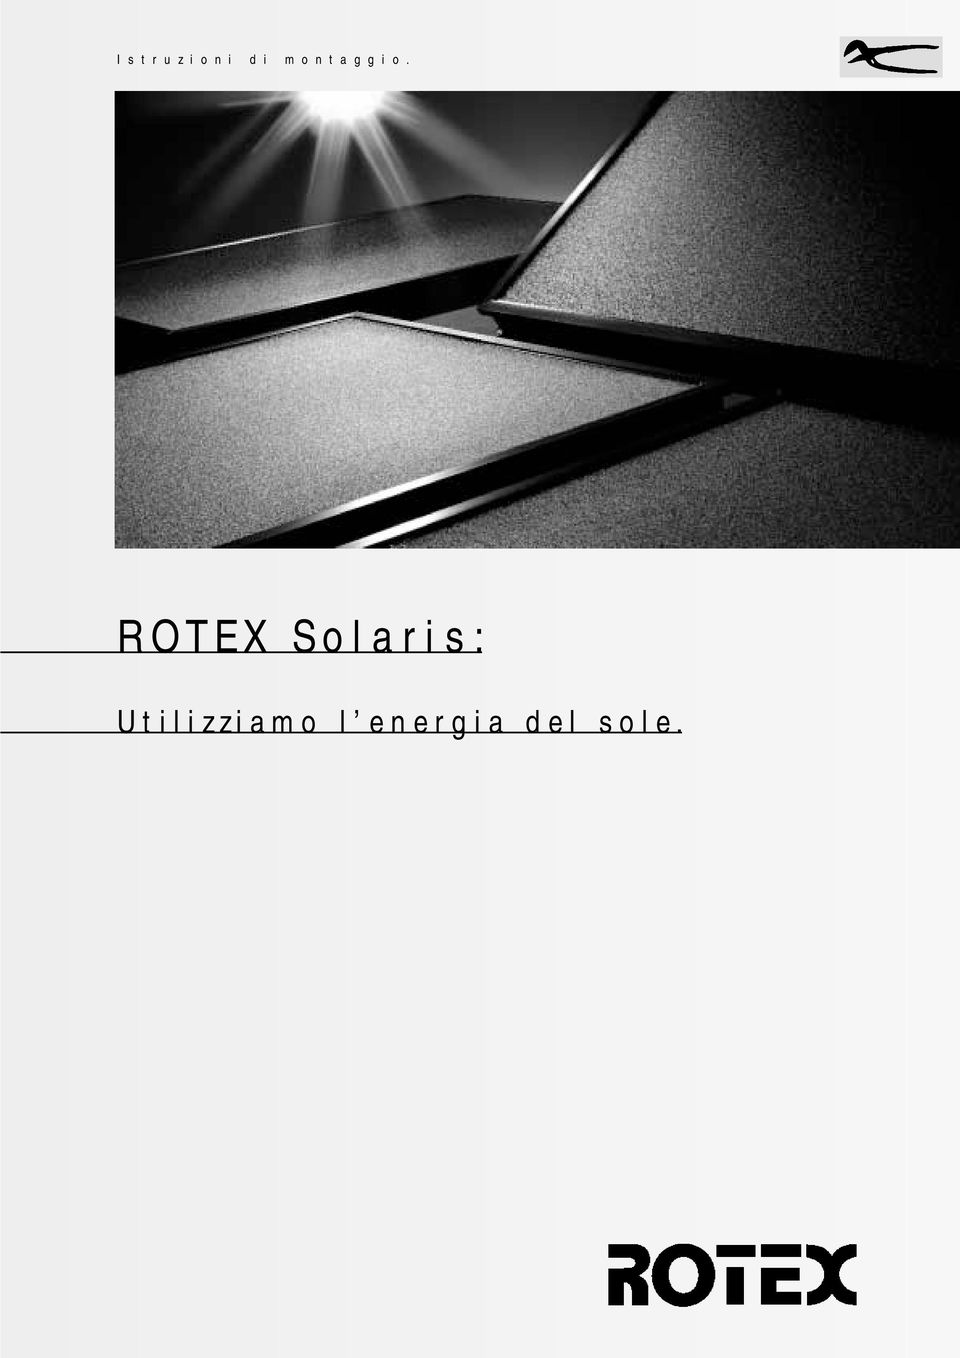 ROTEX Solaris: